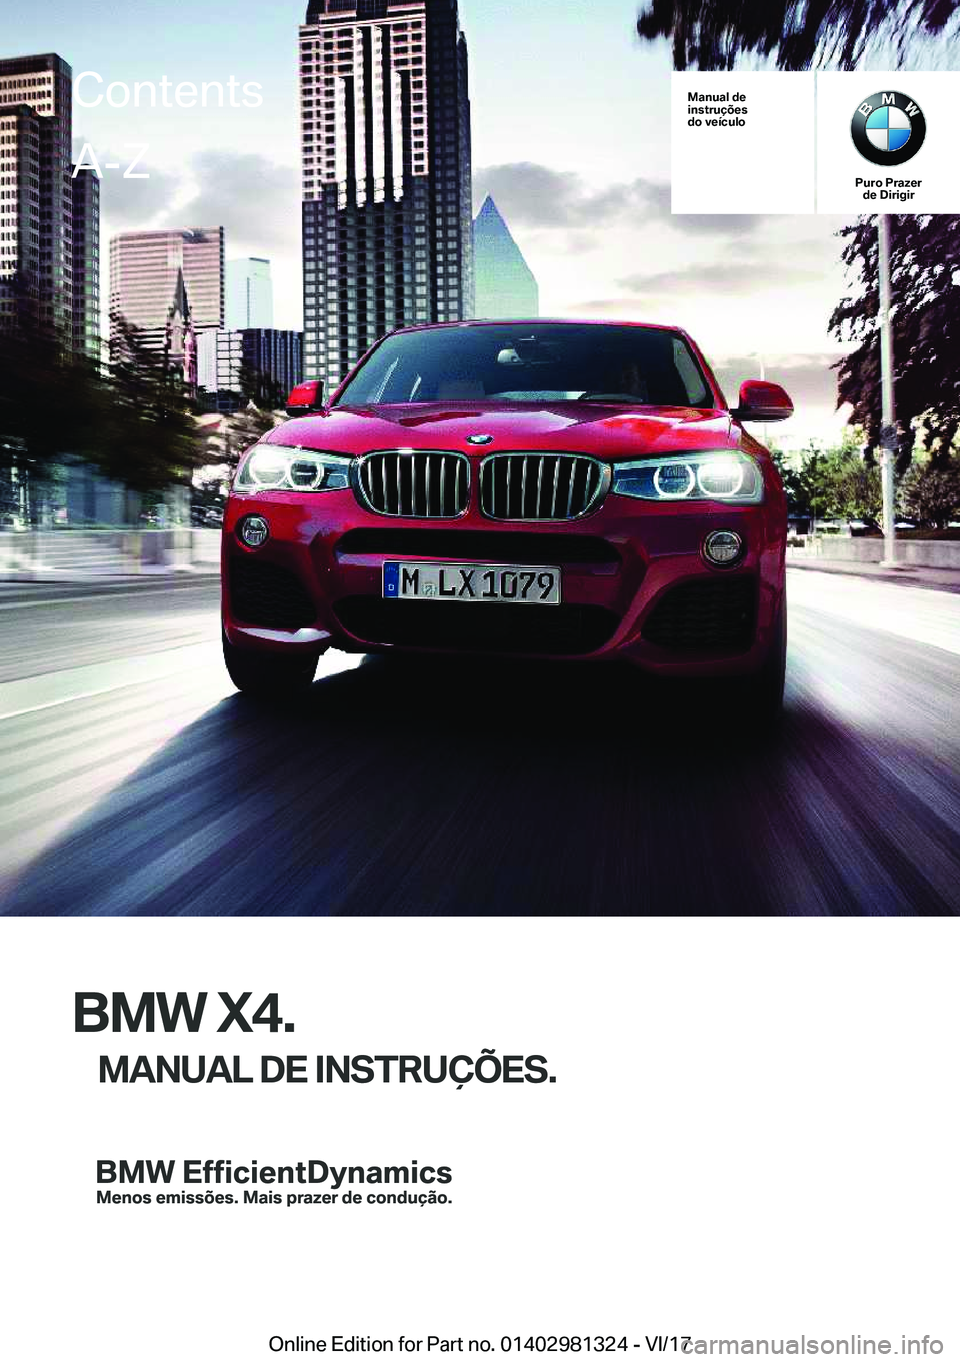 BMW X4 2018  Manual do condutor (in Portuguese) �M�a�n�u�a�l��d�e
�i�n�s�t�r�u�